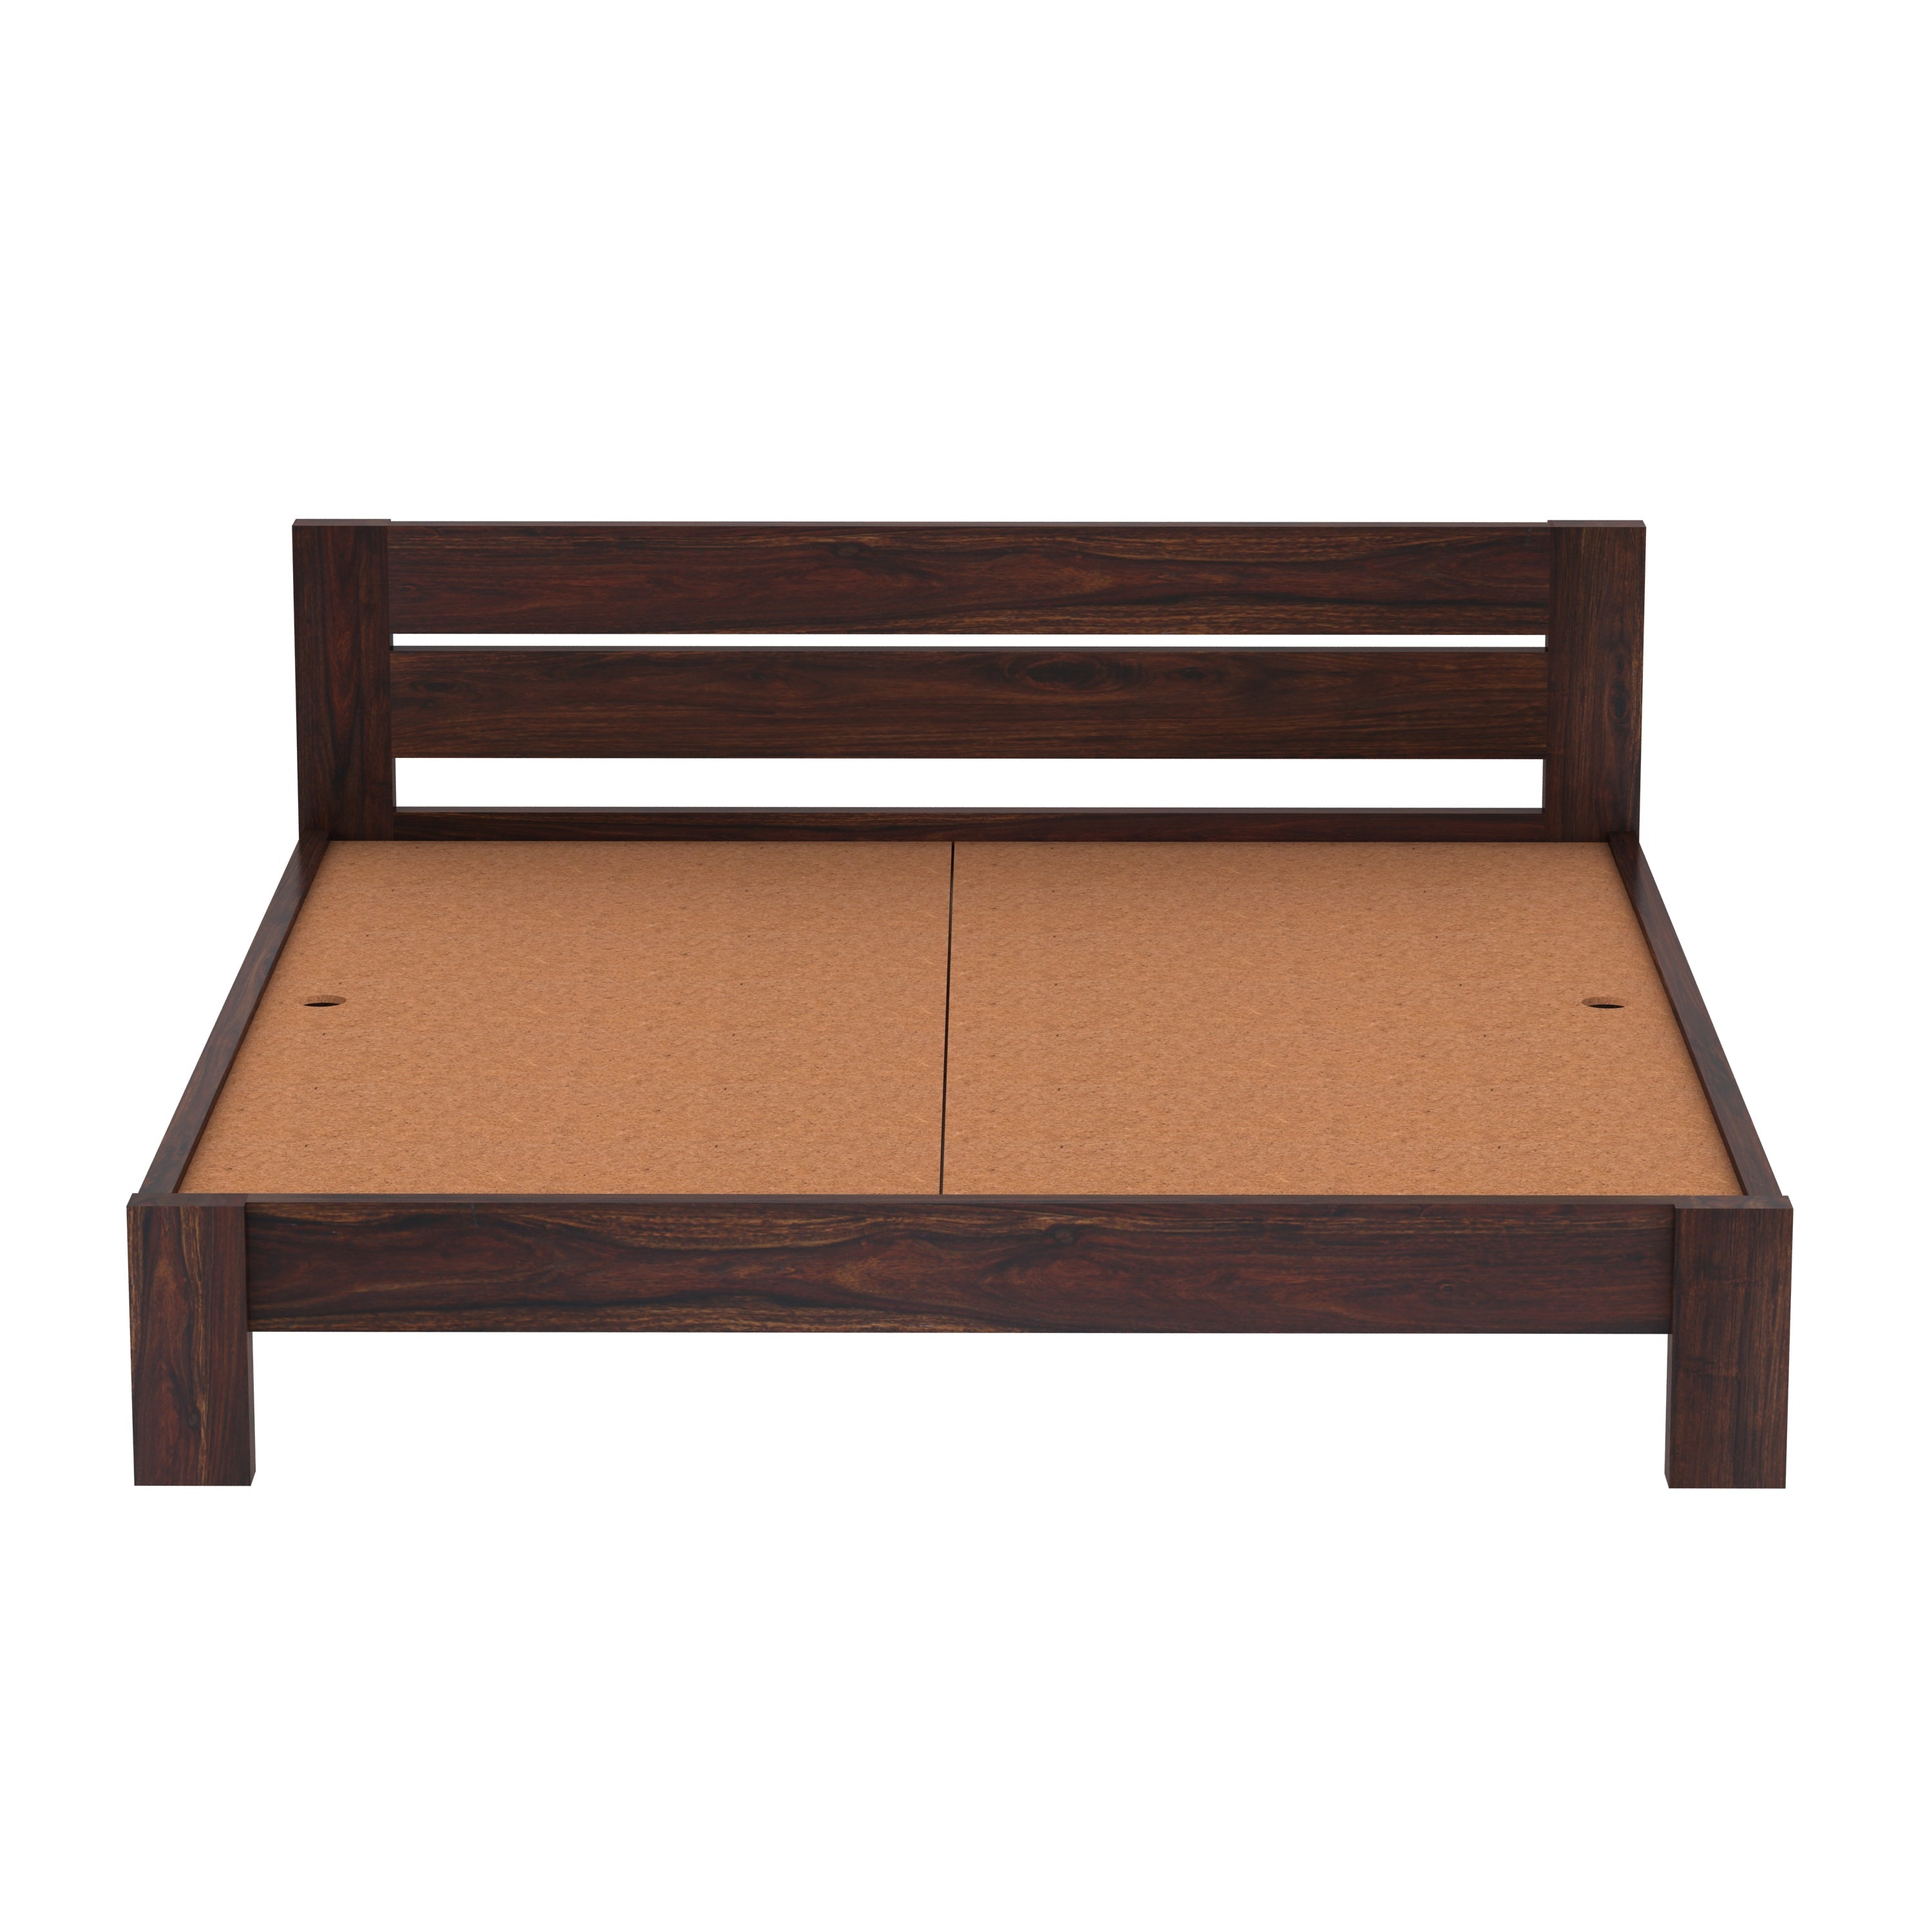 Maria Solid Sheesham Wood Bed Without Storage (King Size, Walnut Finish)